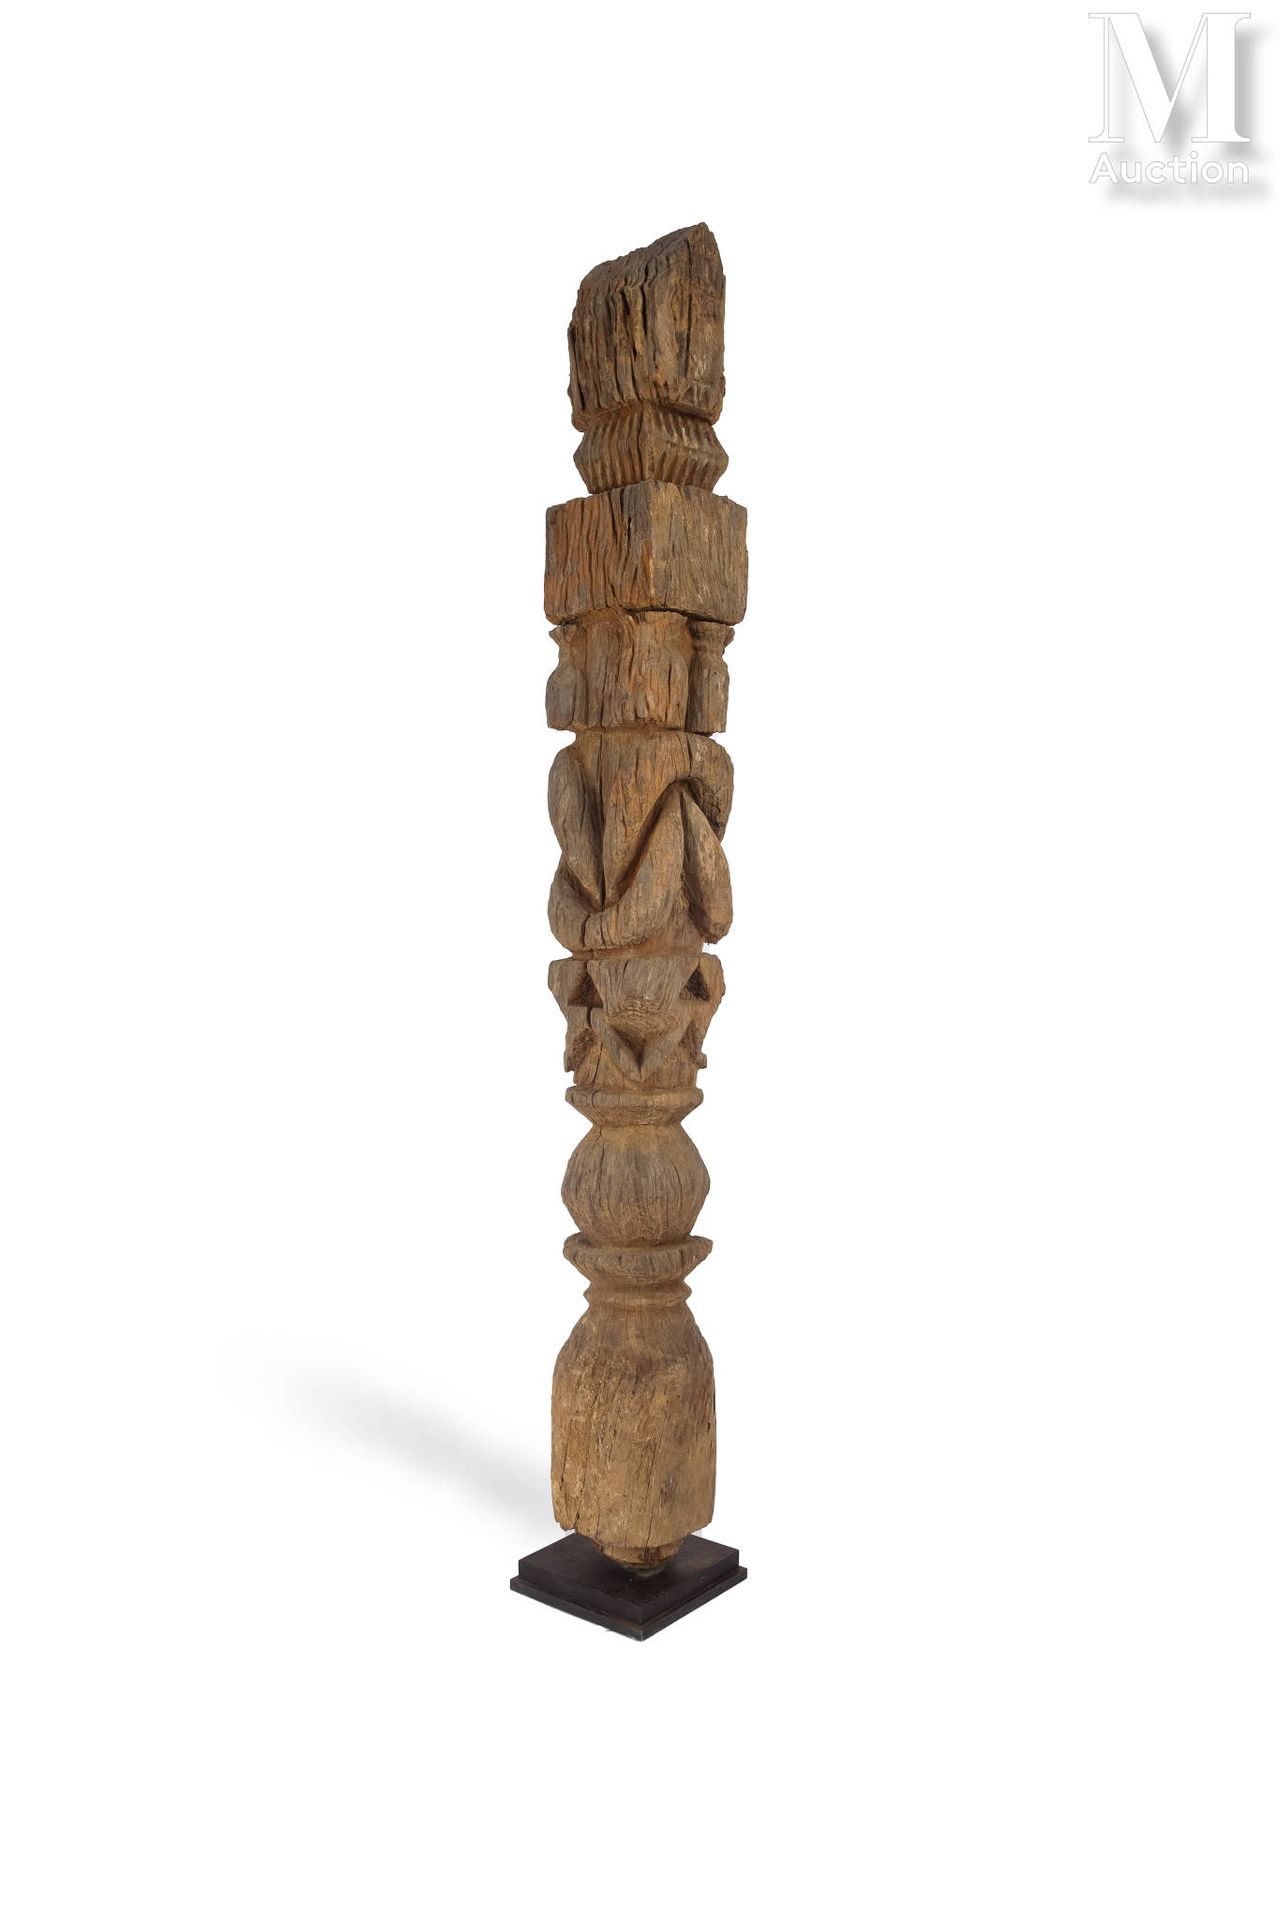 Pilier 装饰有多个黄油壶和模板 
木质，风化，棕色铜锈
尼泊尔
114 厘米